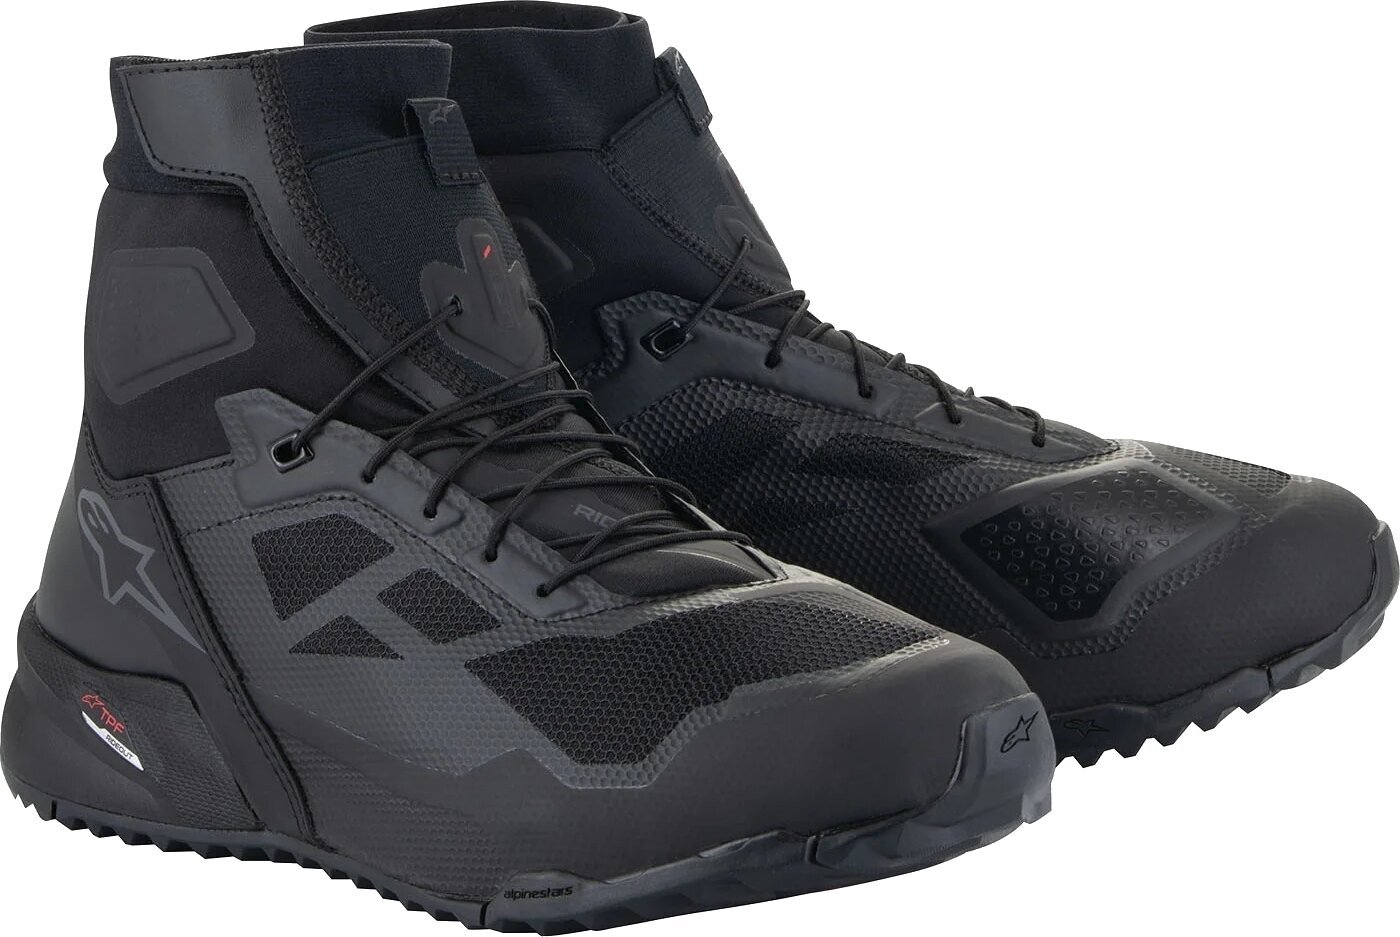 Topánky Alpinestars CR-1 Shoes Black/Dark Grey 43,5 Topánky